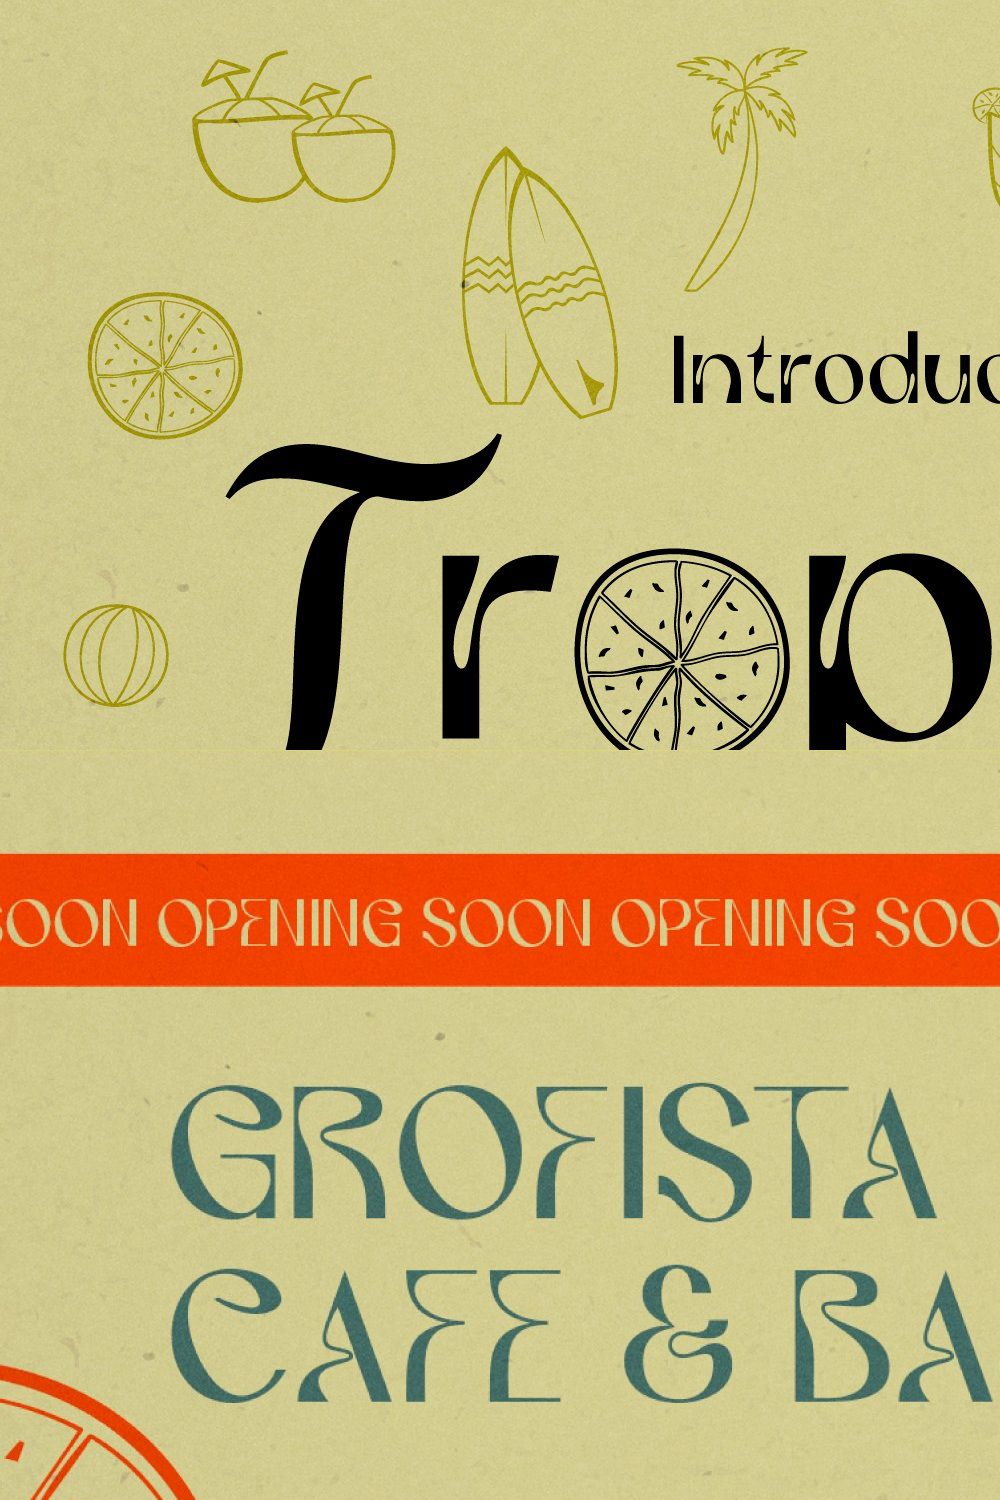 Tropista Tropical Concept pinterest preview image.